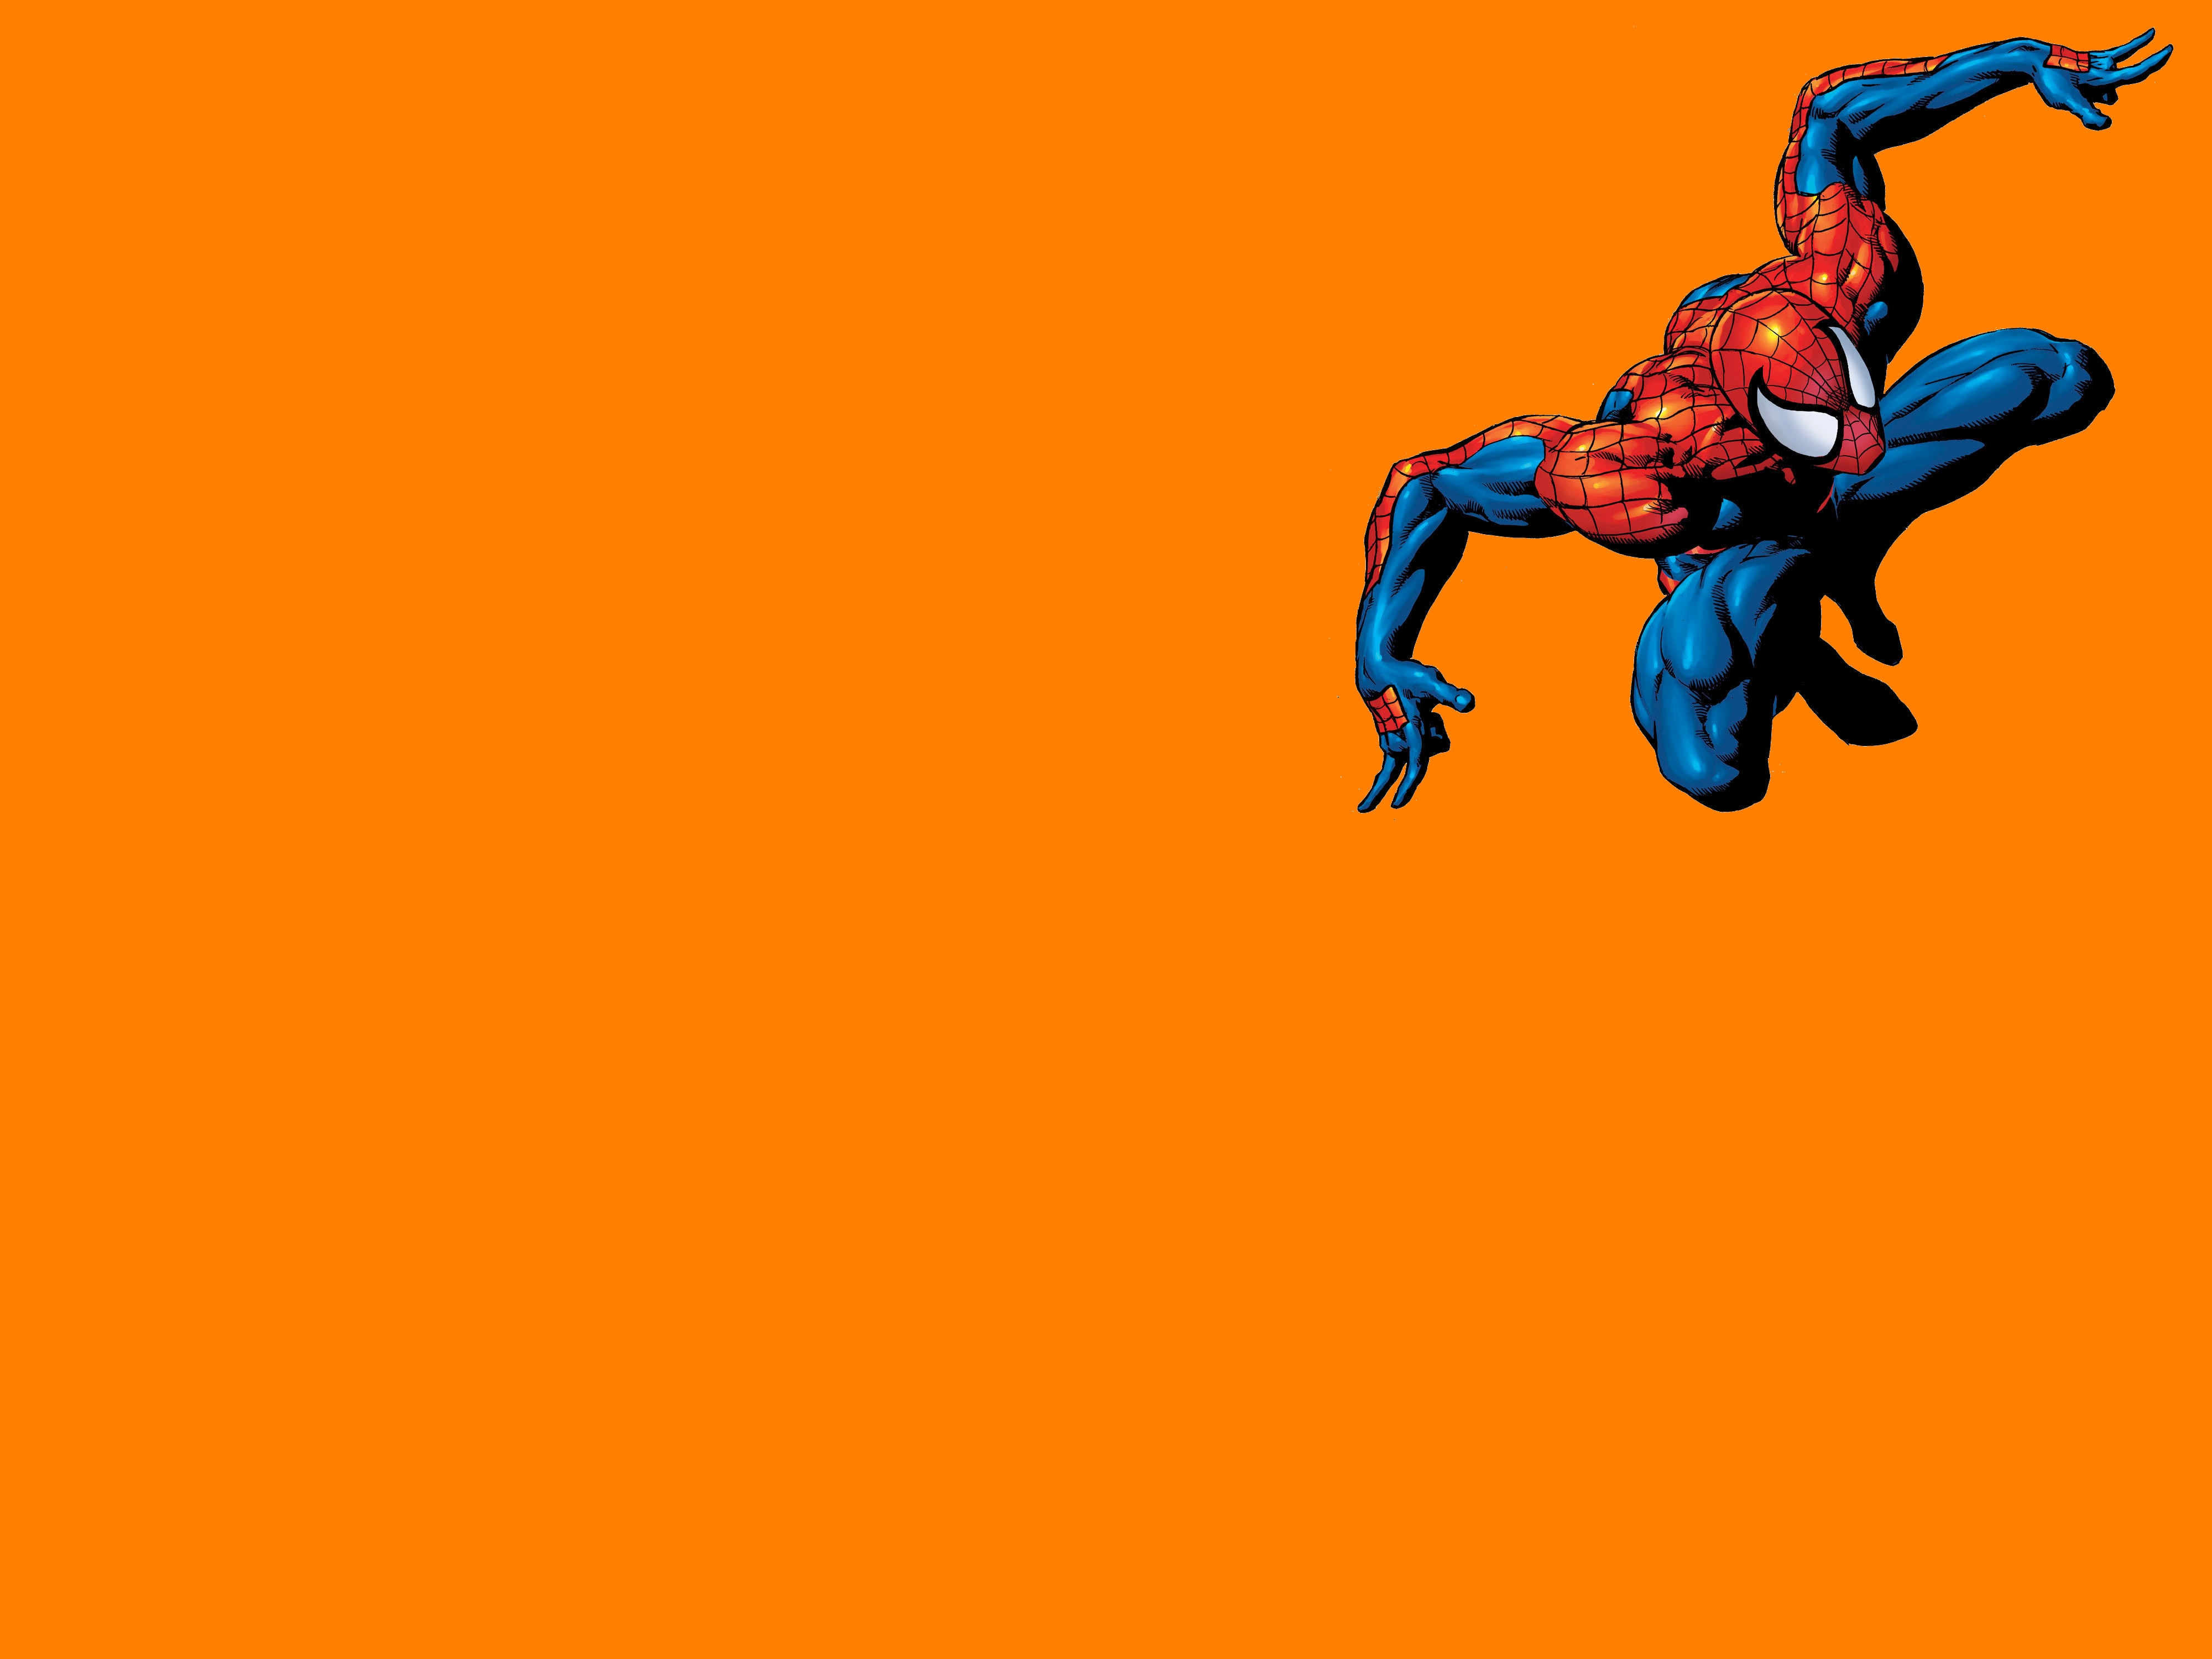 Spider-Man Computer Wallpapers, Desktop Backgrounds | 4000x3000 | ID:440817